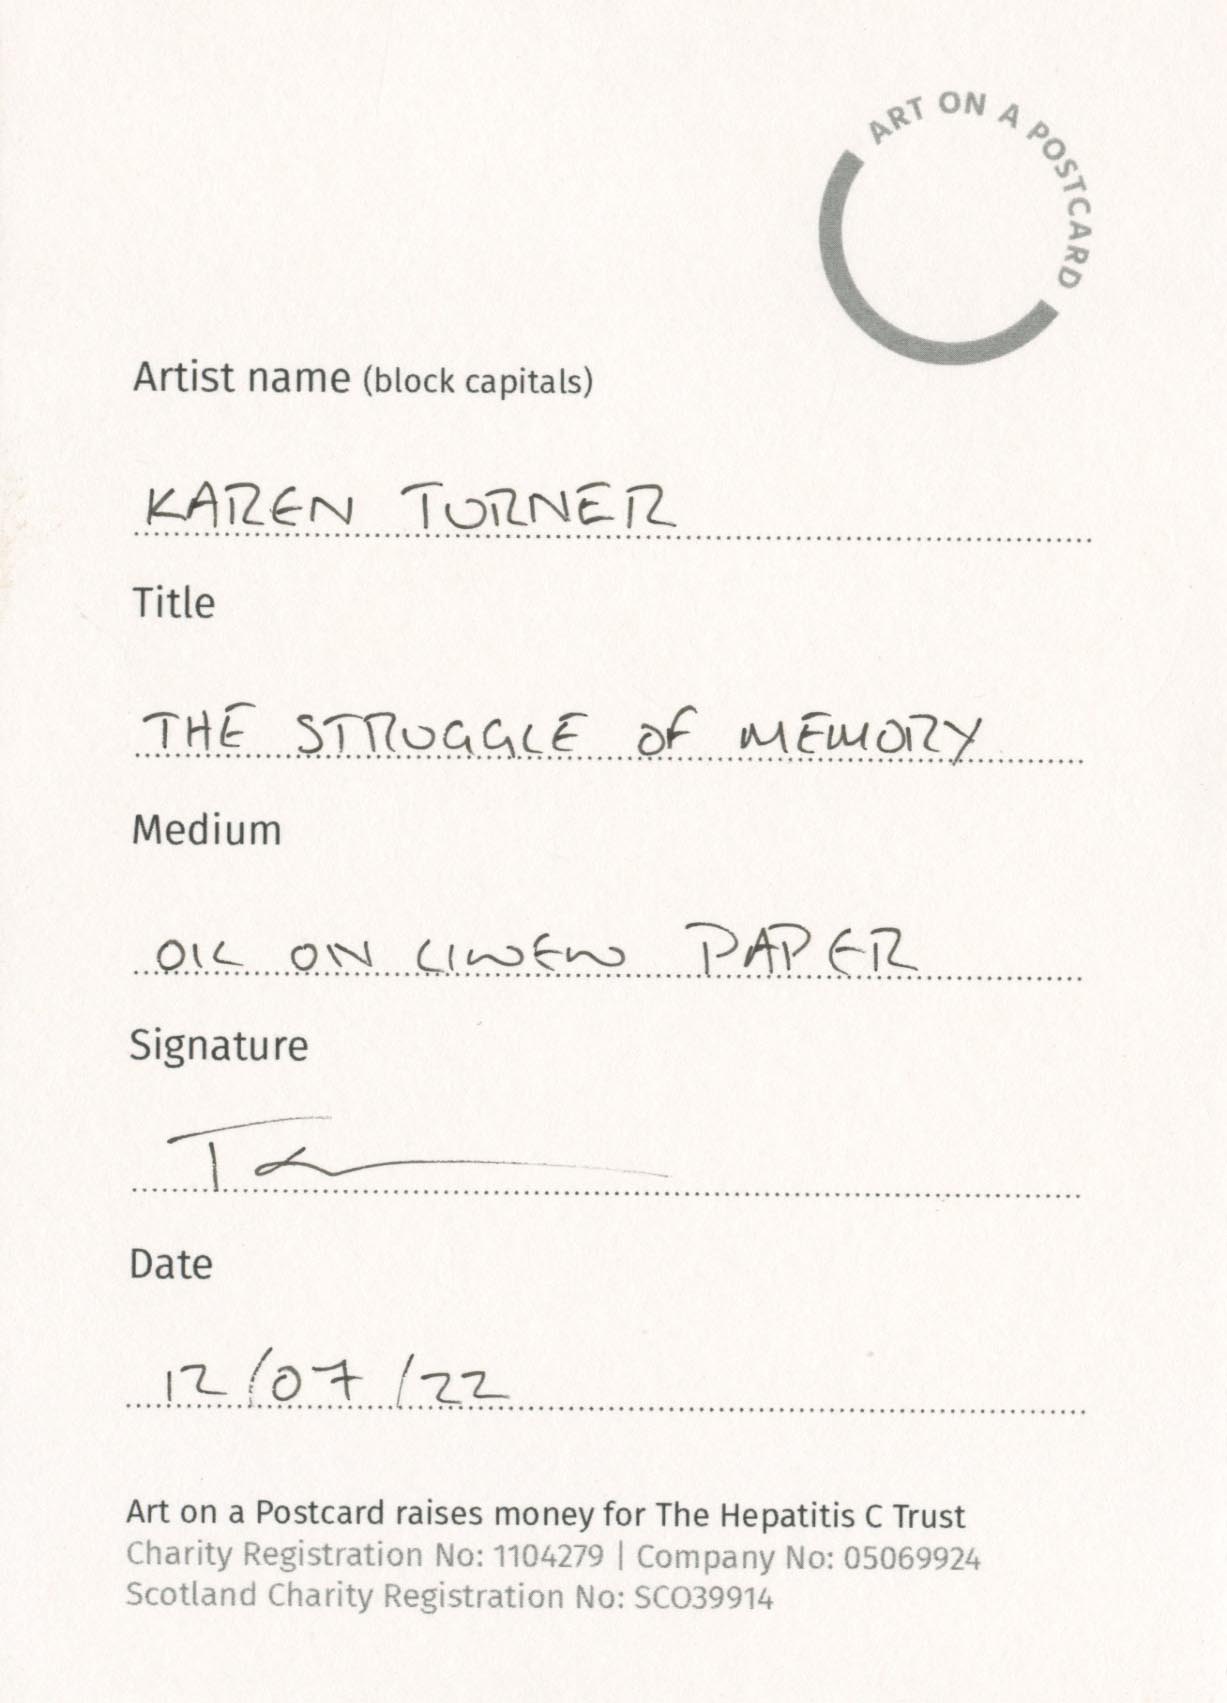 36. Karen Turner - The Struggle of Memory - BACK